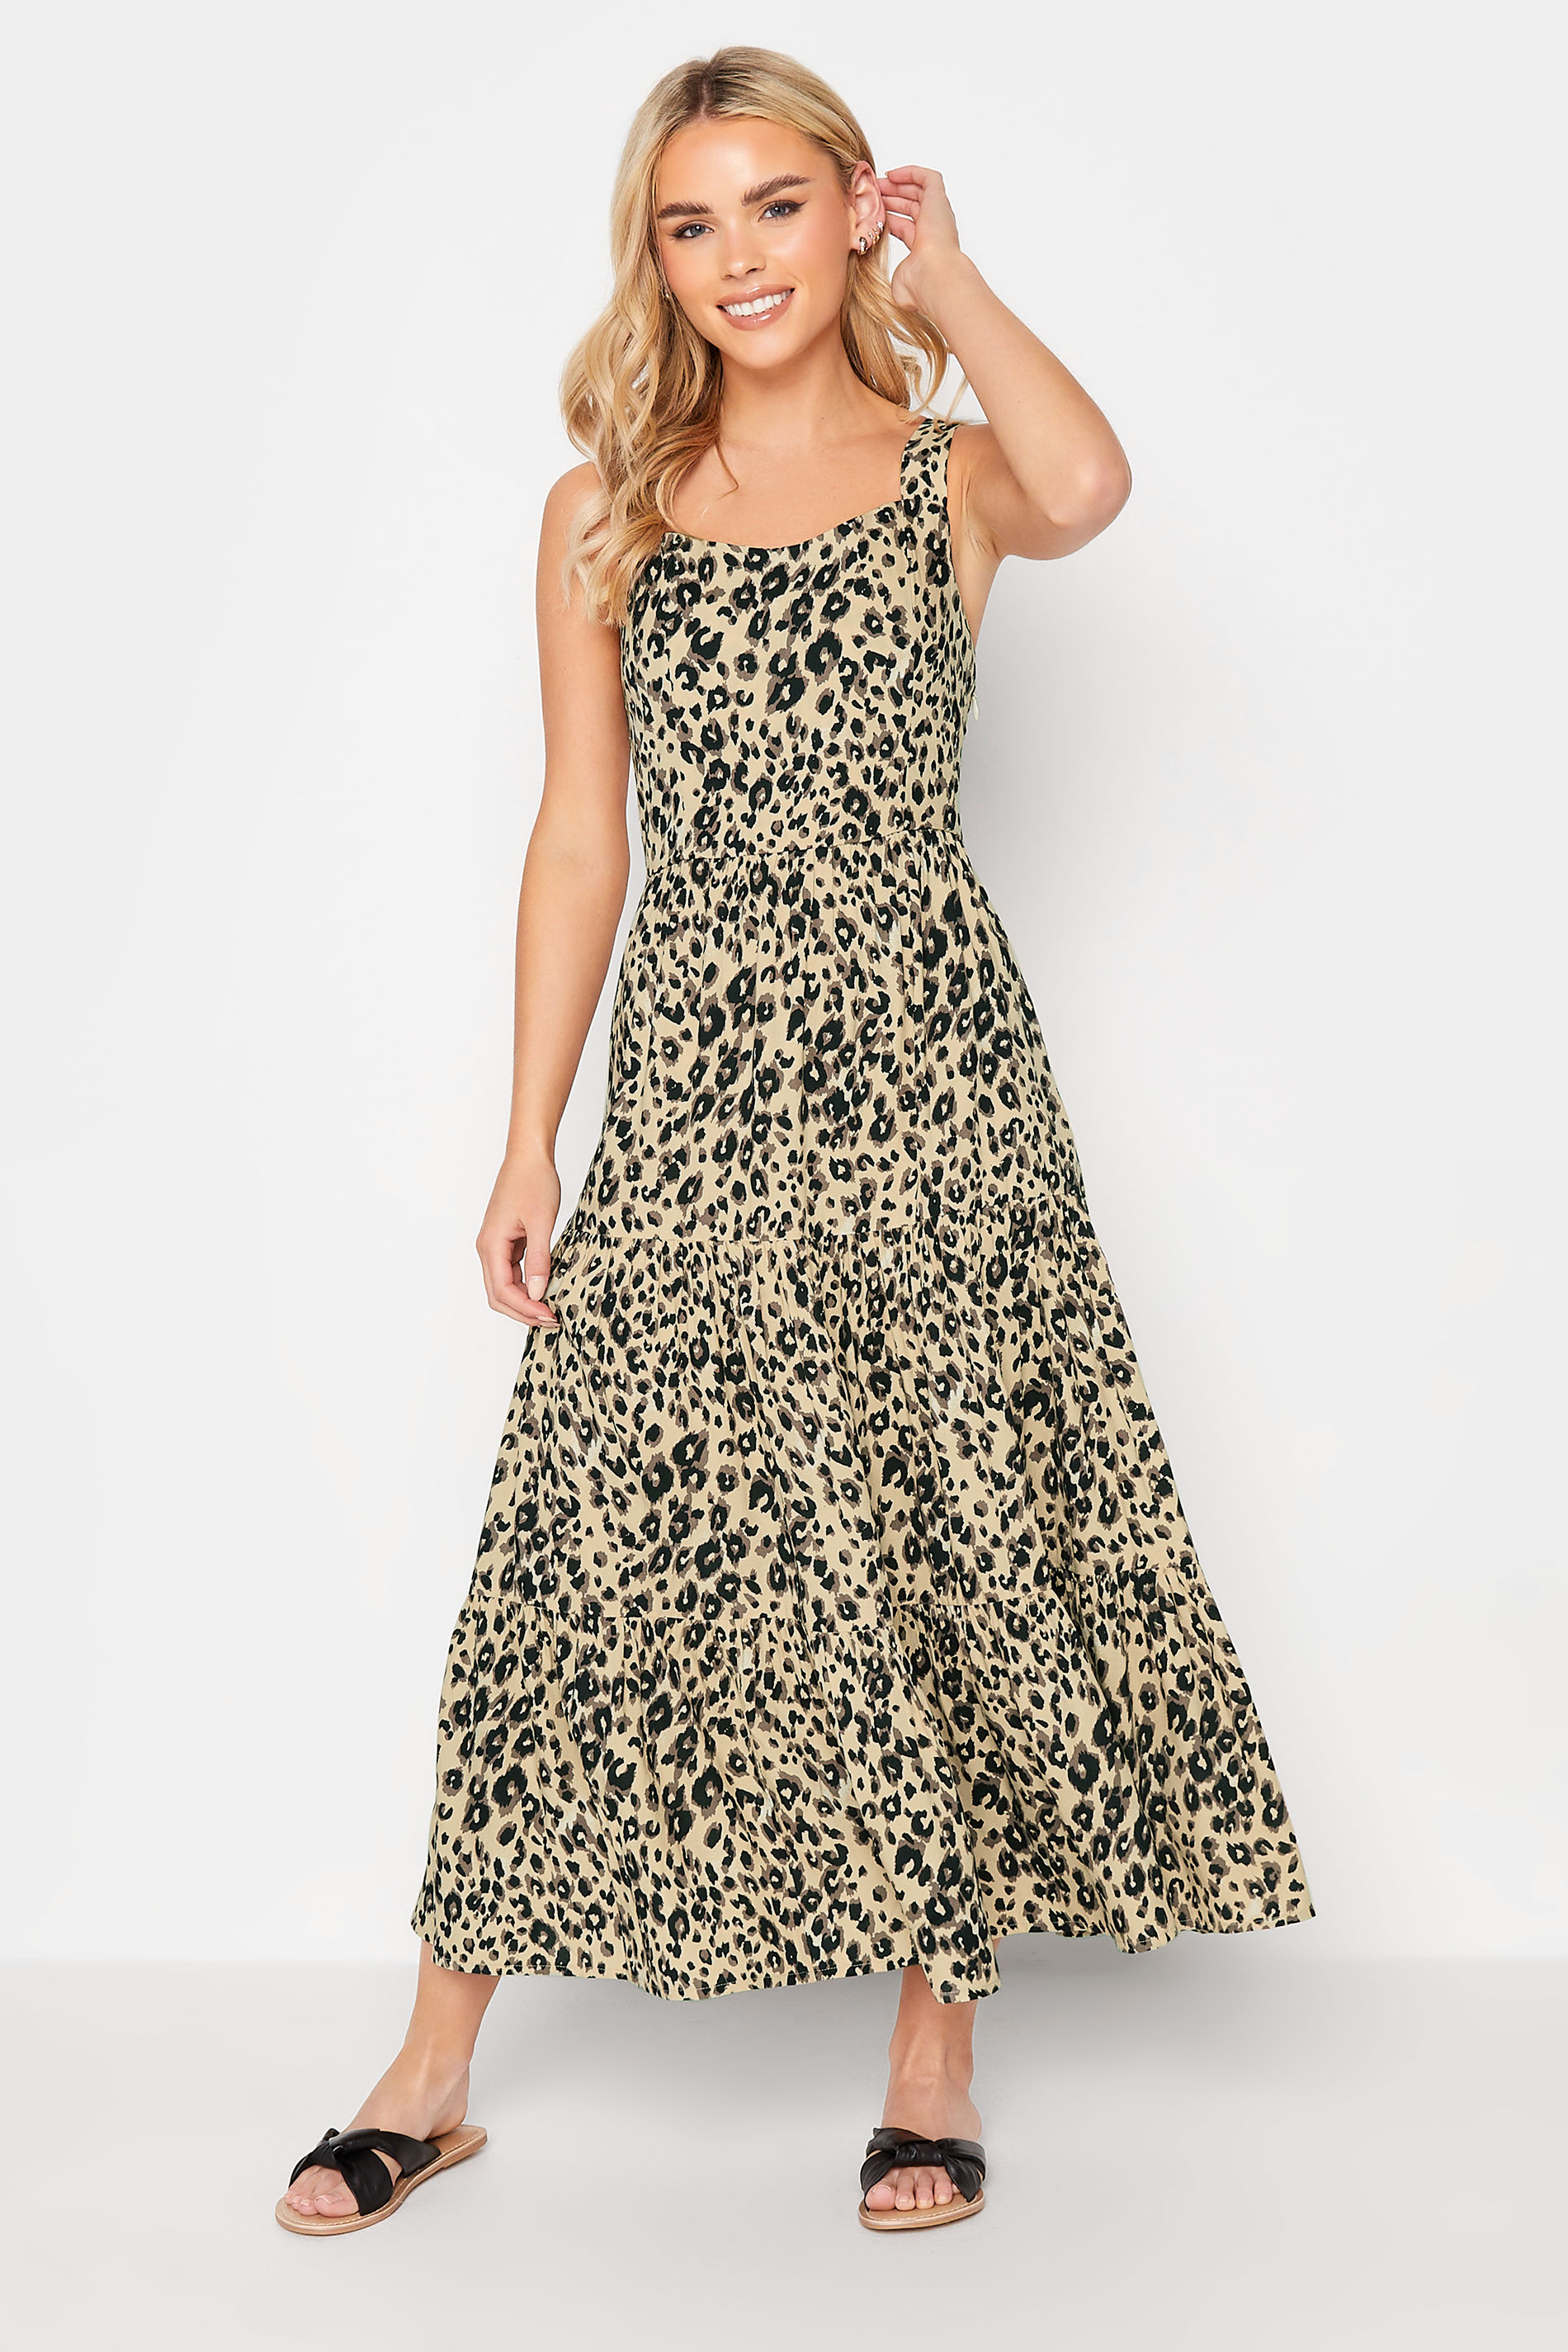 PixieGirl Brown Leopard Print Tiered Midaxi Dress | PixieGirl 1